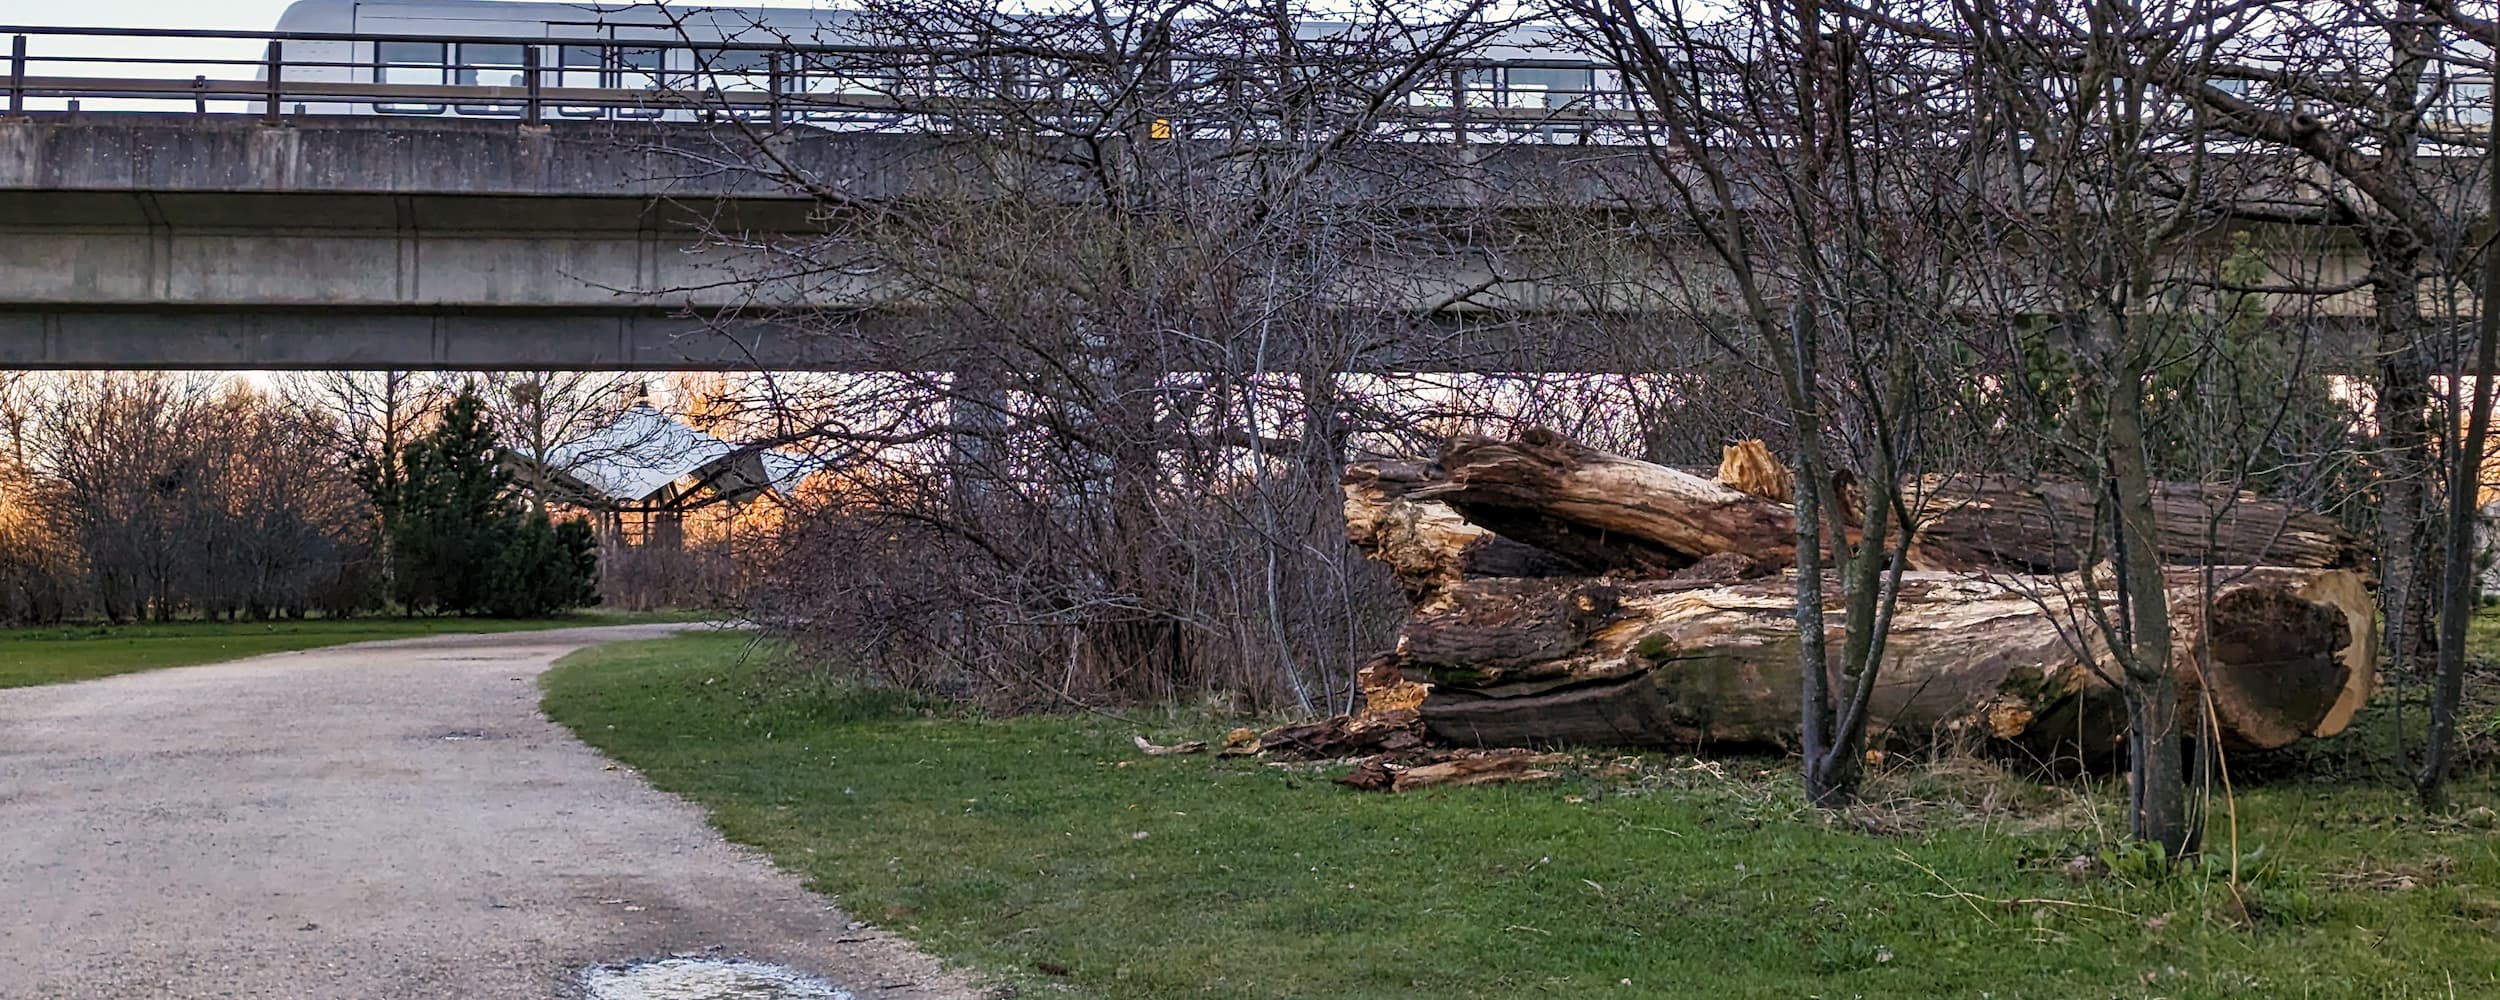 I Ørestad elsker vi døde træstammer. Her har et udtjent træ fået nyt liv på Grønningen, hvor et metrotog suser hen over parken.